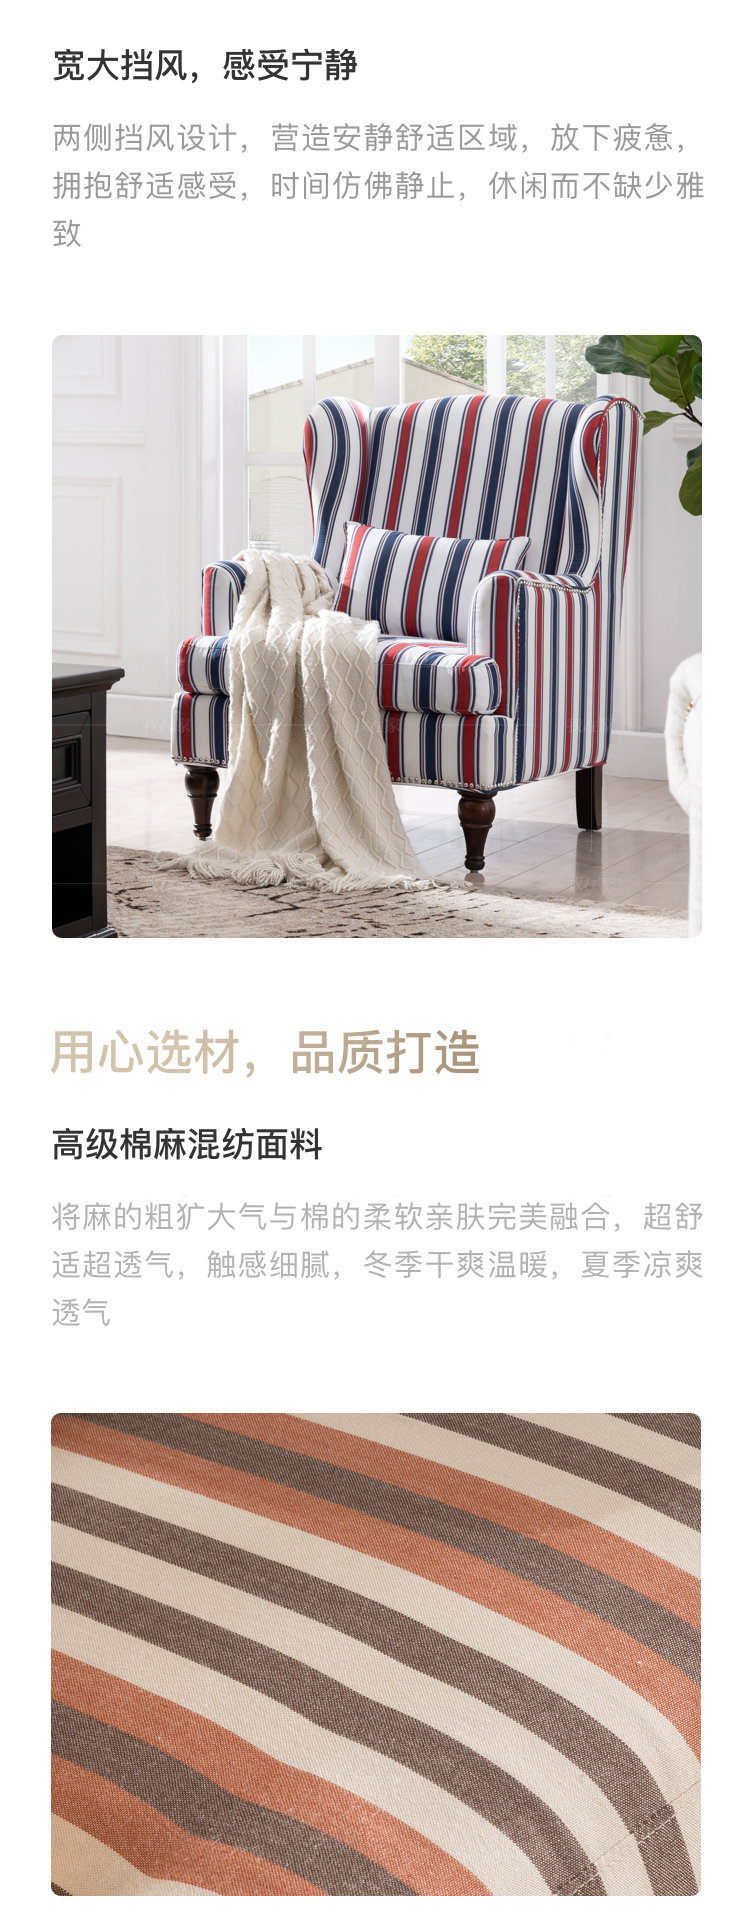 简约美式风格克莱顿休闲椅的家具详细介绍